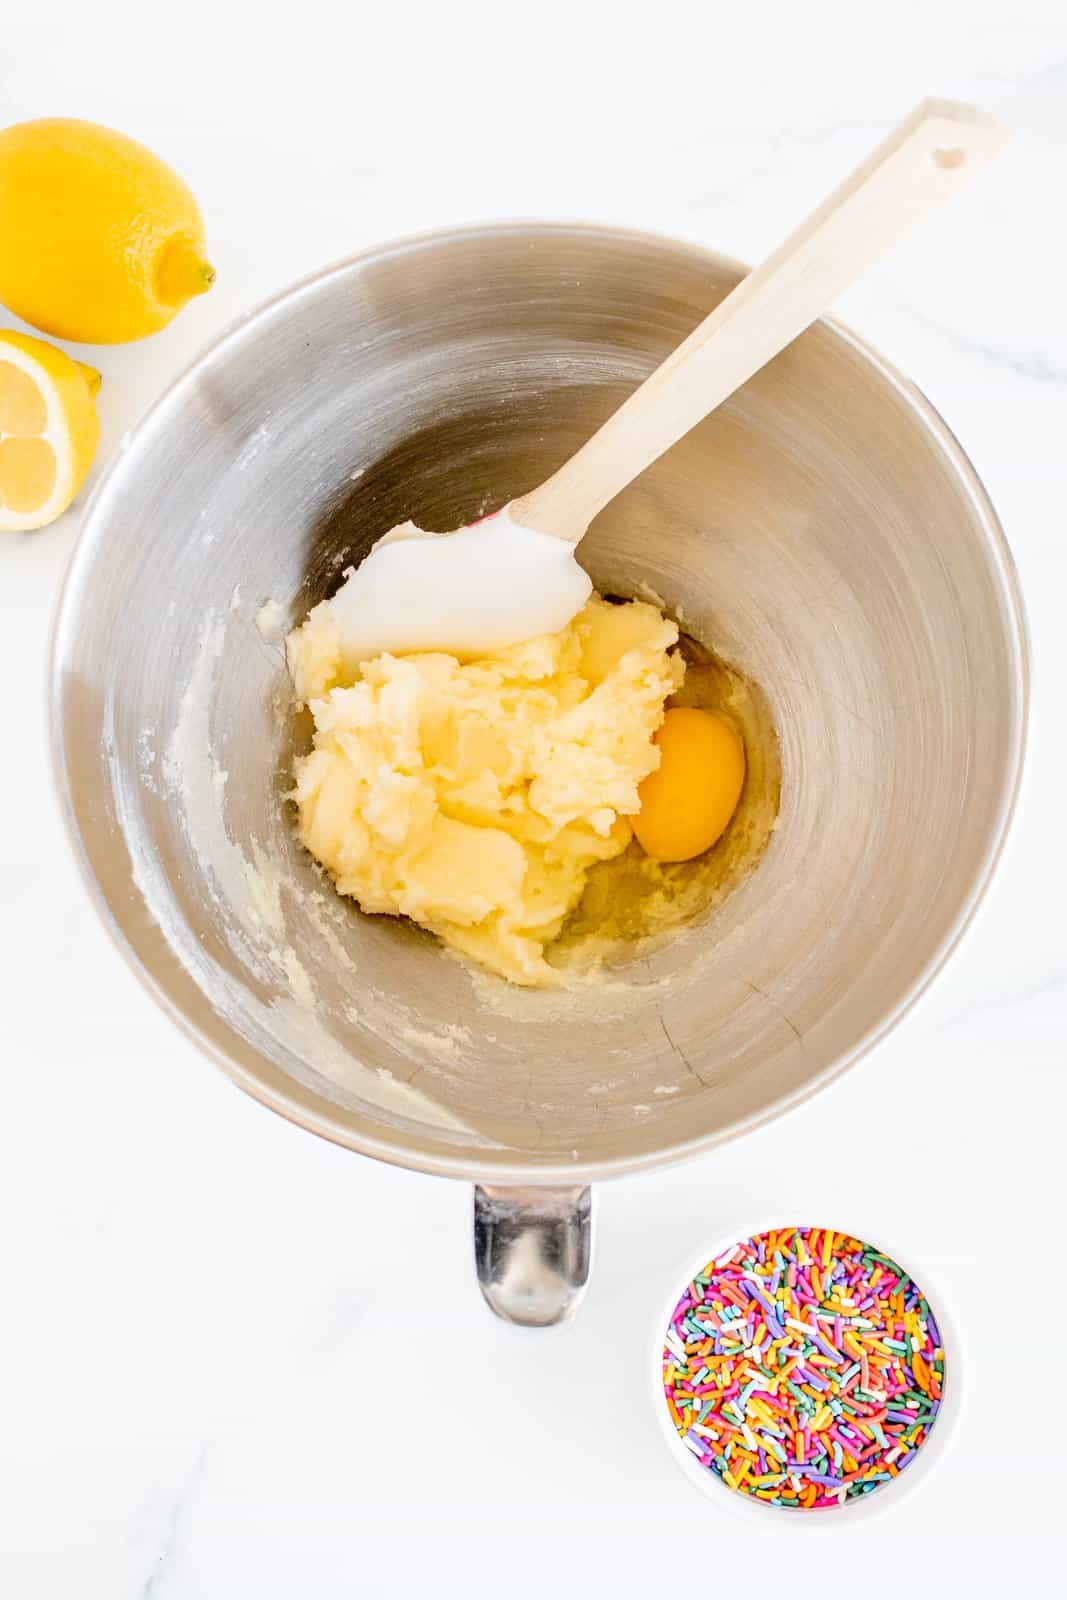 Burro e zucchero sbattuti nella ciotola della planetaria con l'aggiunta di uovo insieme all'estratto di mandorle, panna acida e succo di limone.